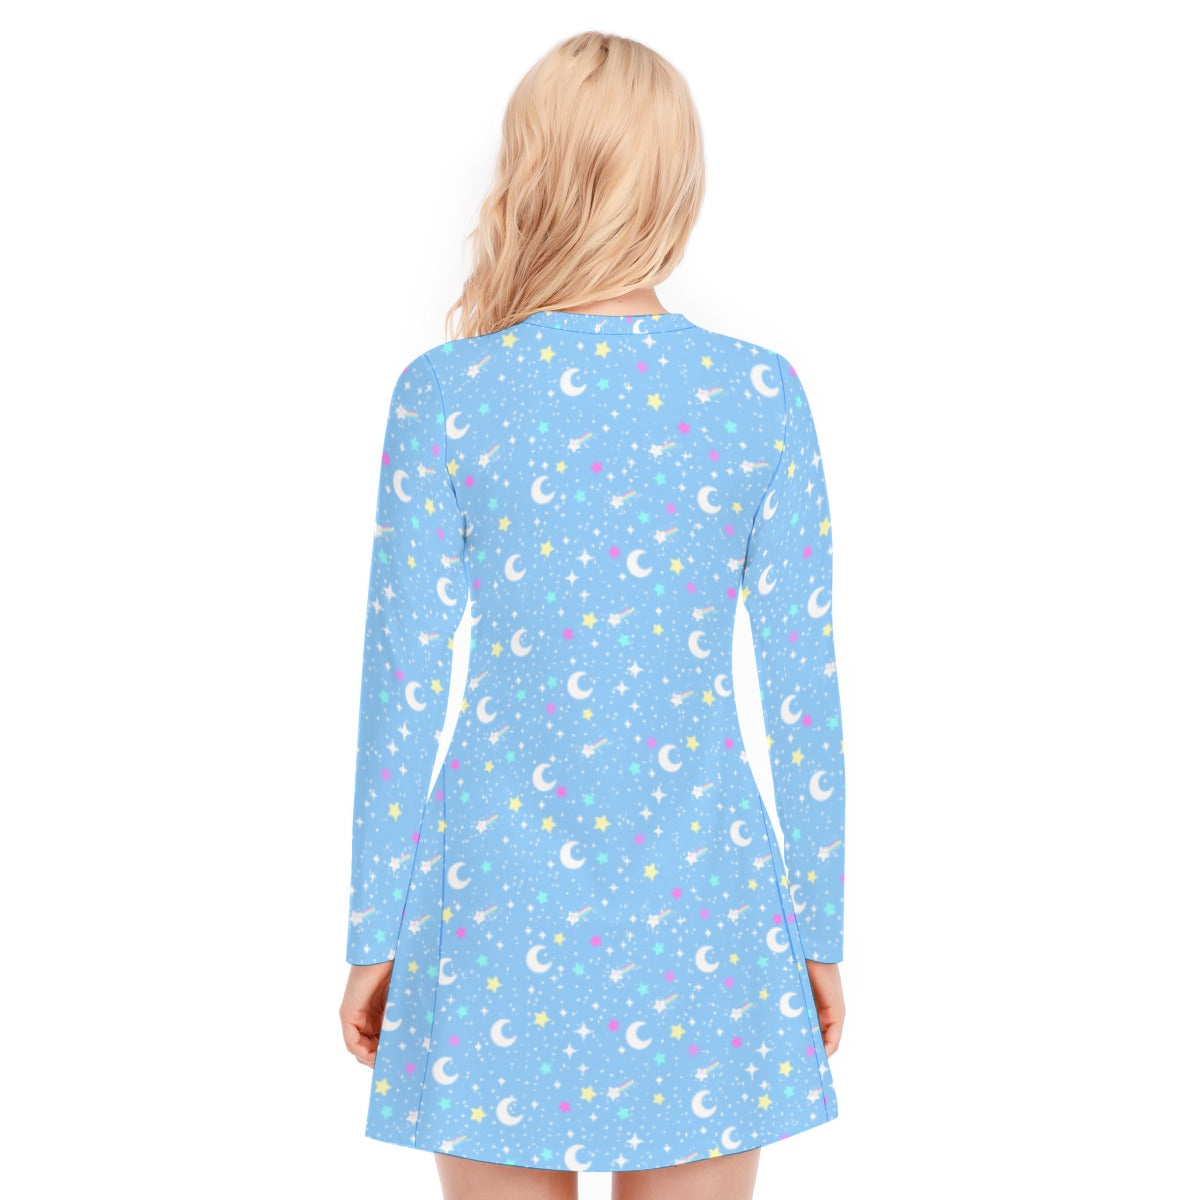 Starry Glitter Women's V-neck Long Sleeve Dress (Blue)